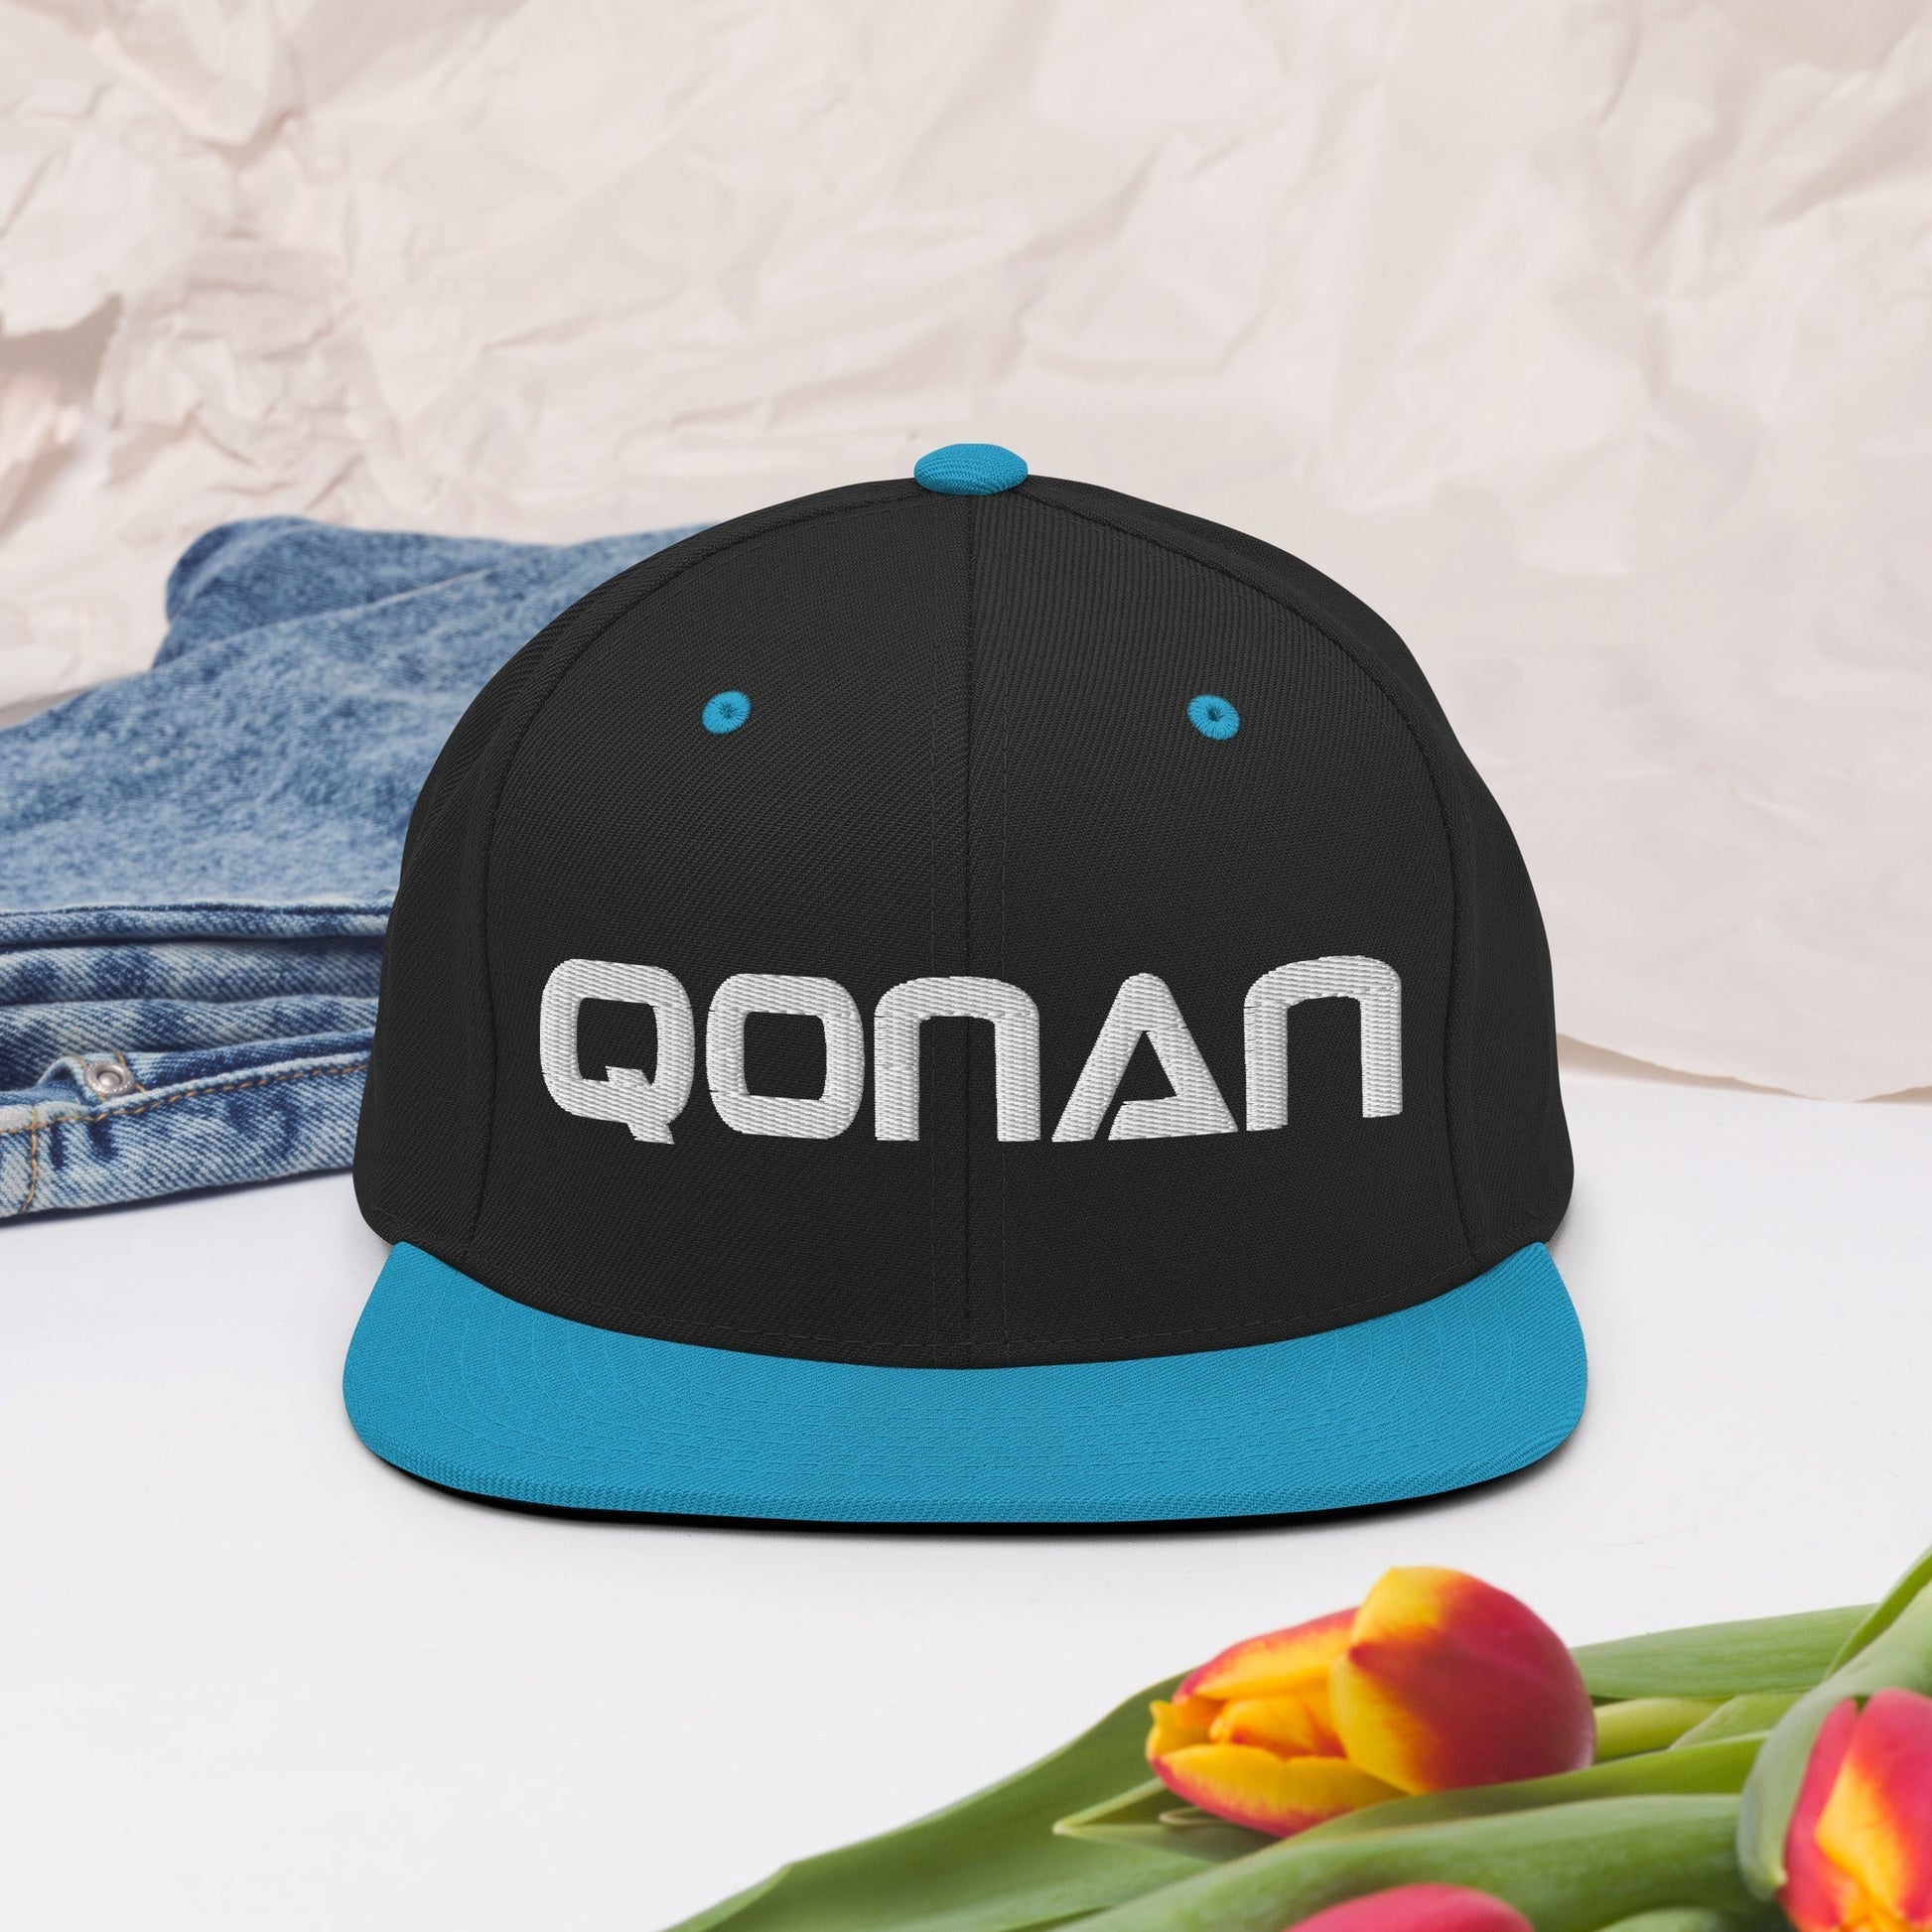 Qonan Snapback Hat Qonan Fightwear